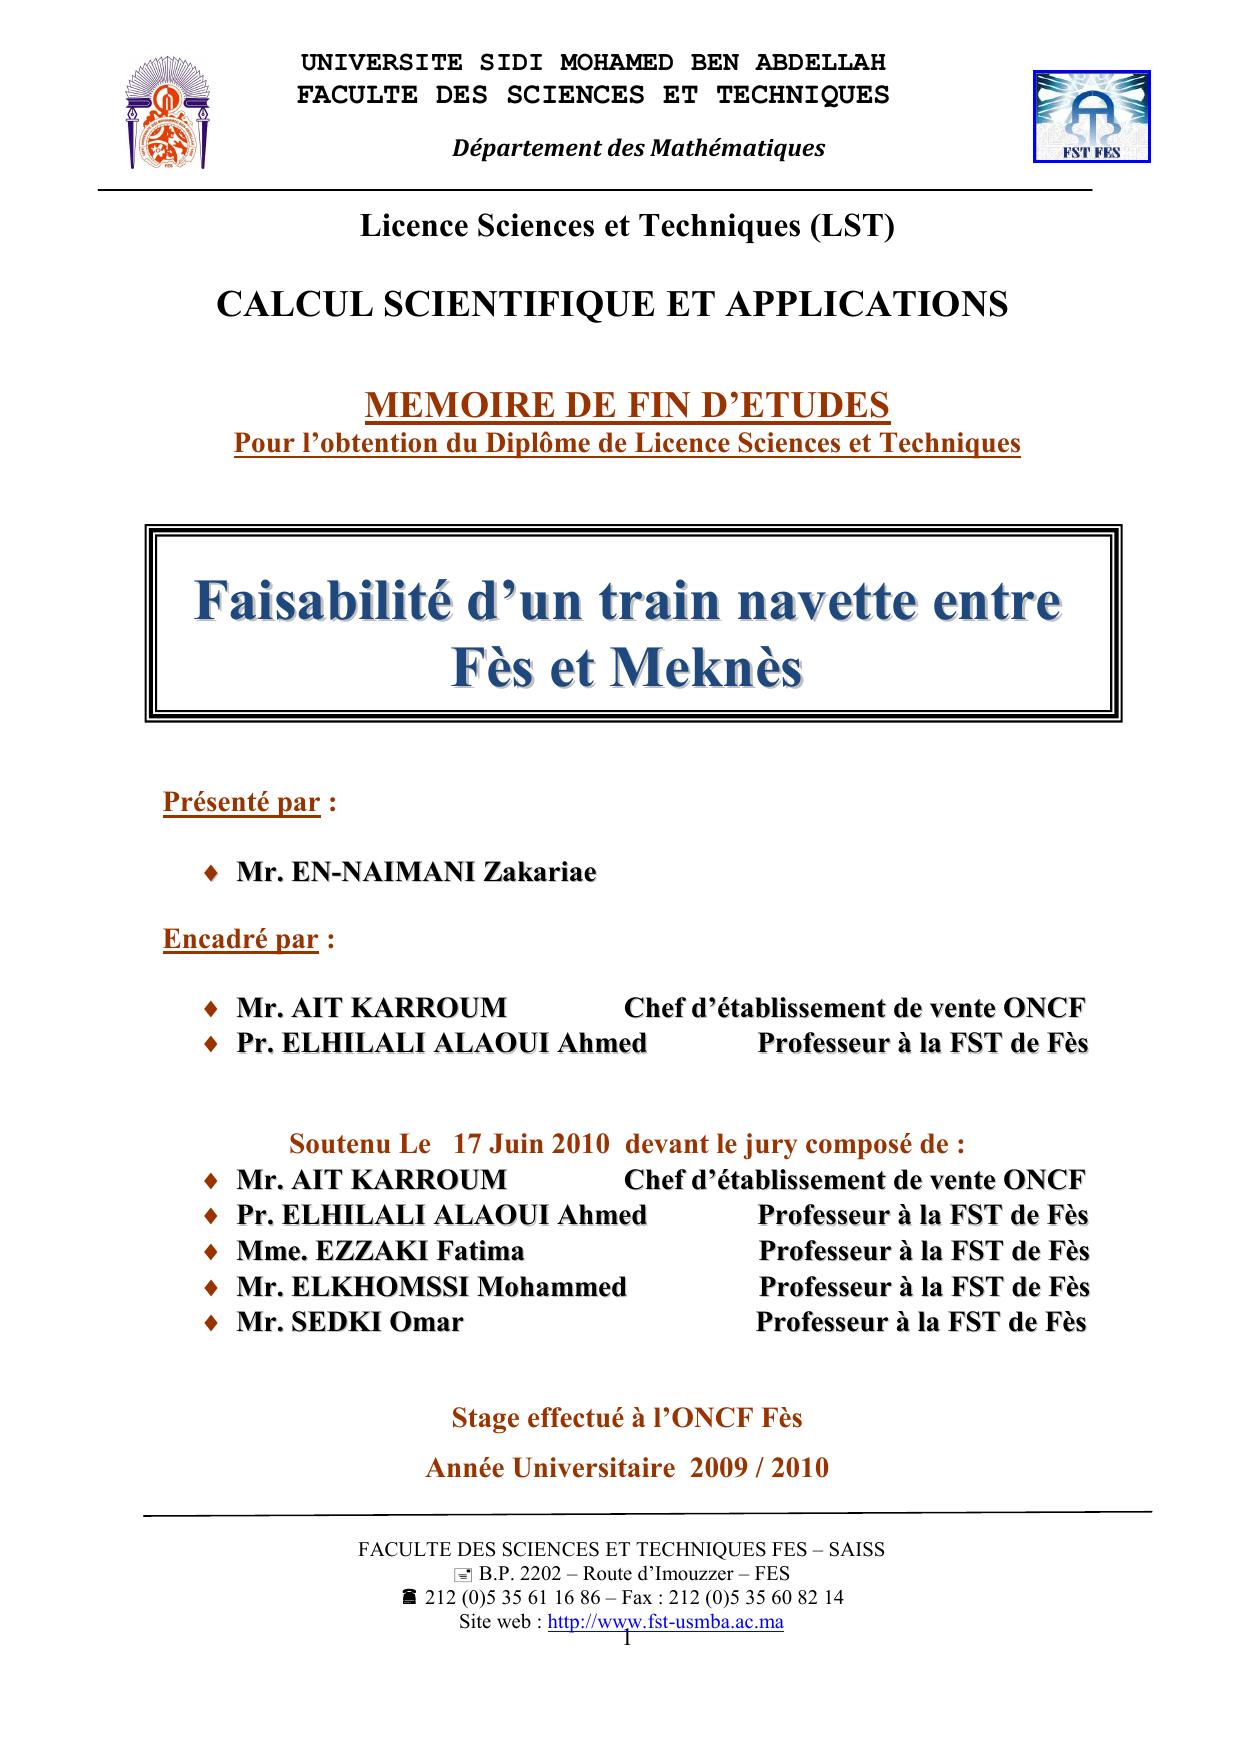 Faisabilité d’un train navette entre Fès et Meknès